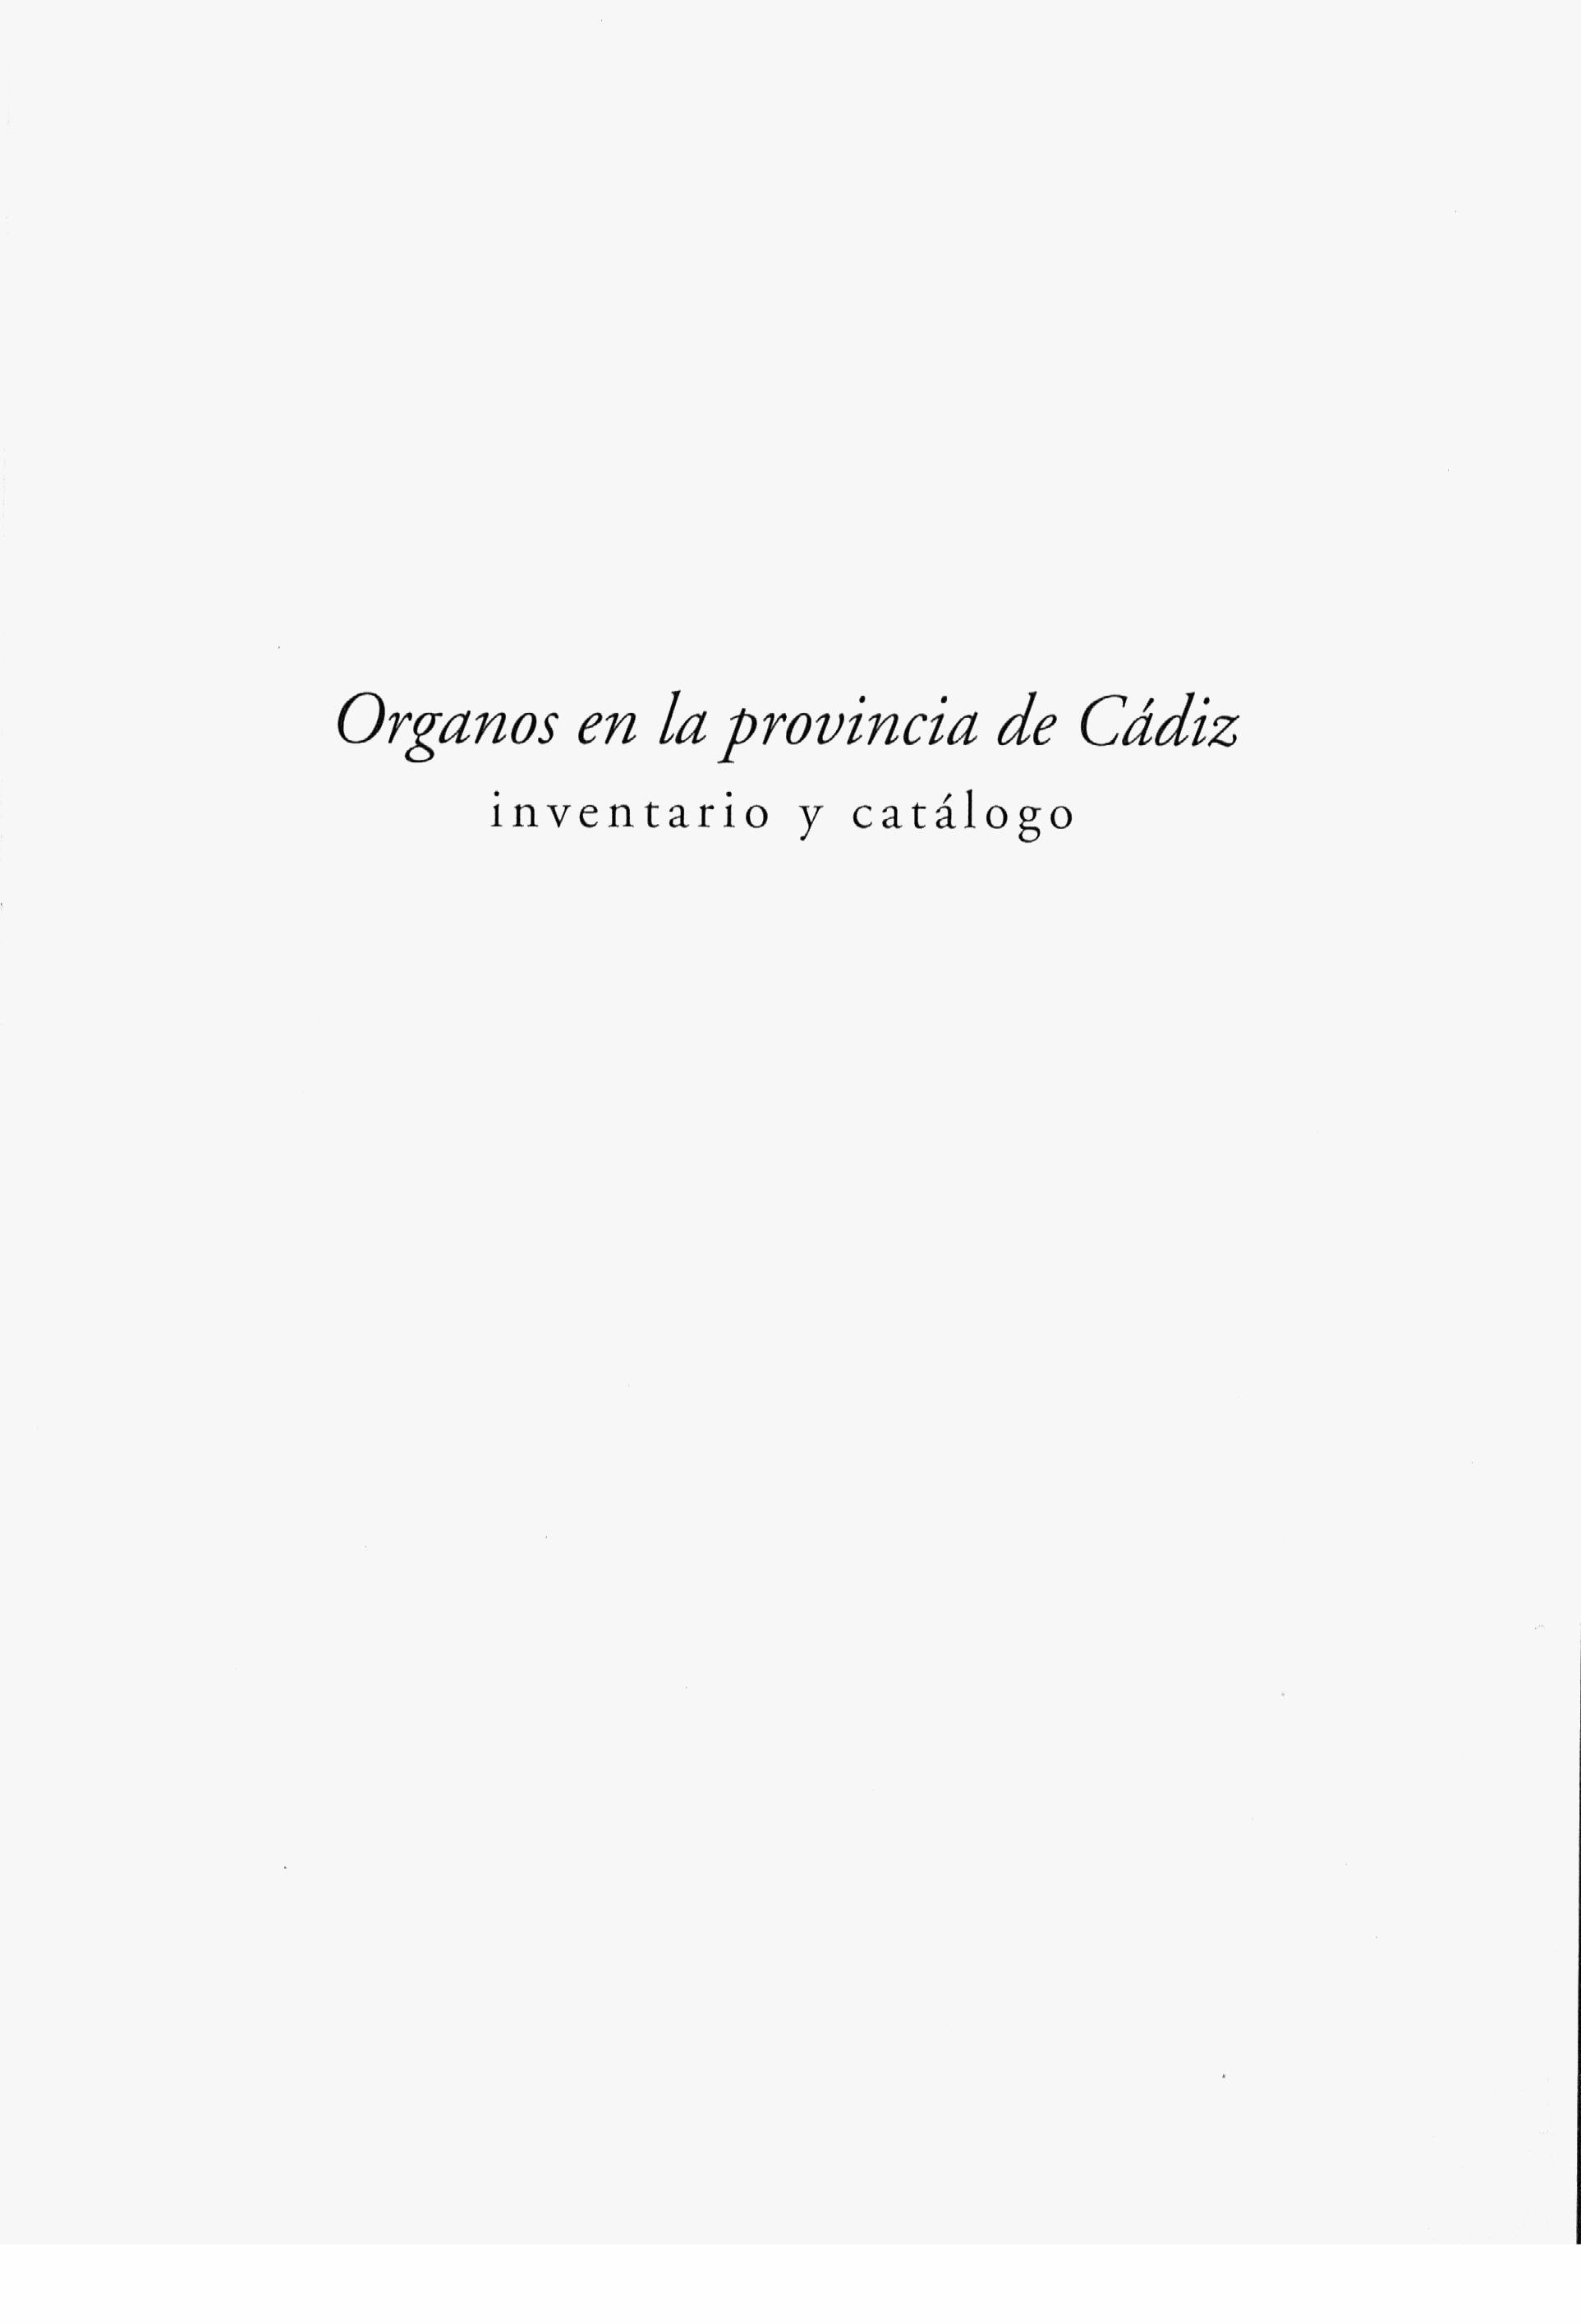 Órganos en la provincia de Cádiz, inventario y catálogo